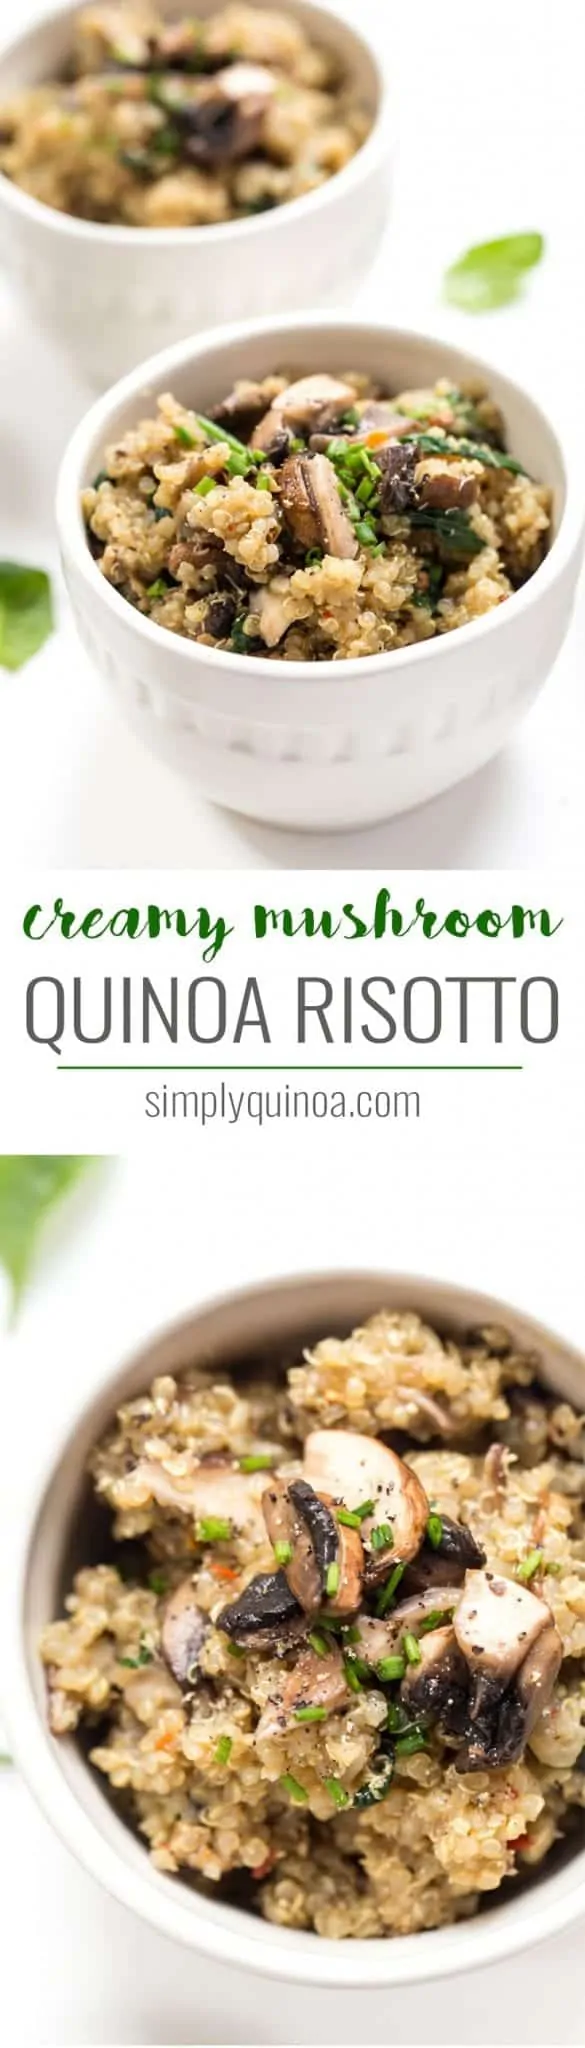 creamy mushroom quinoa risotto with spinach